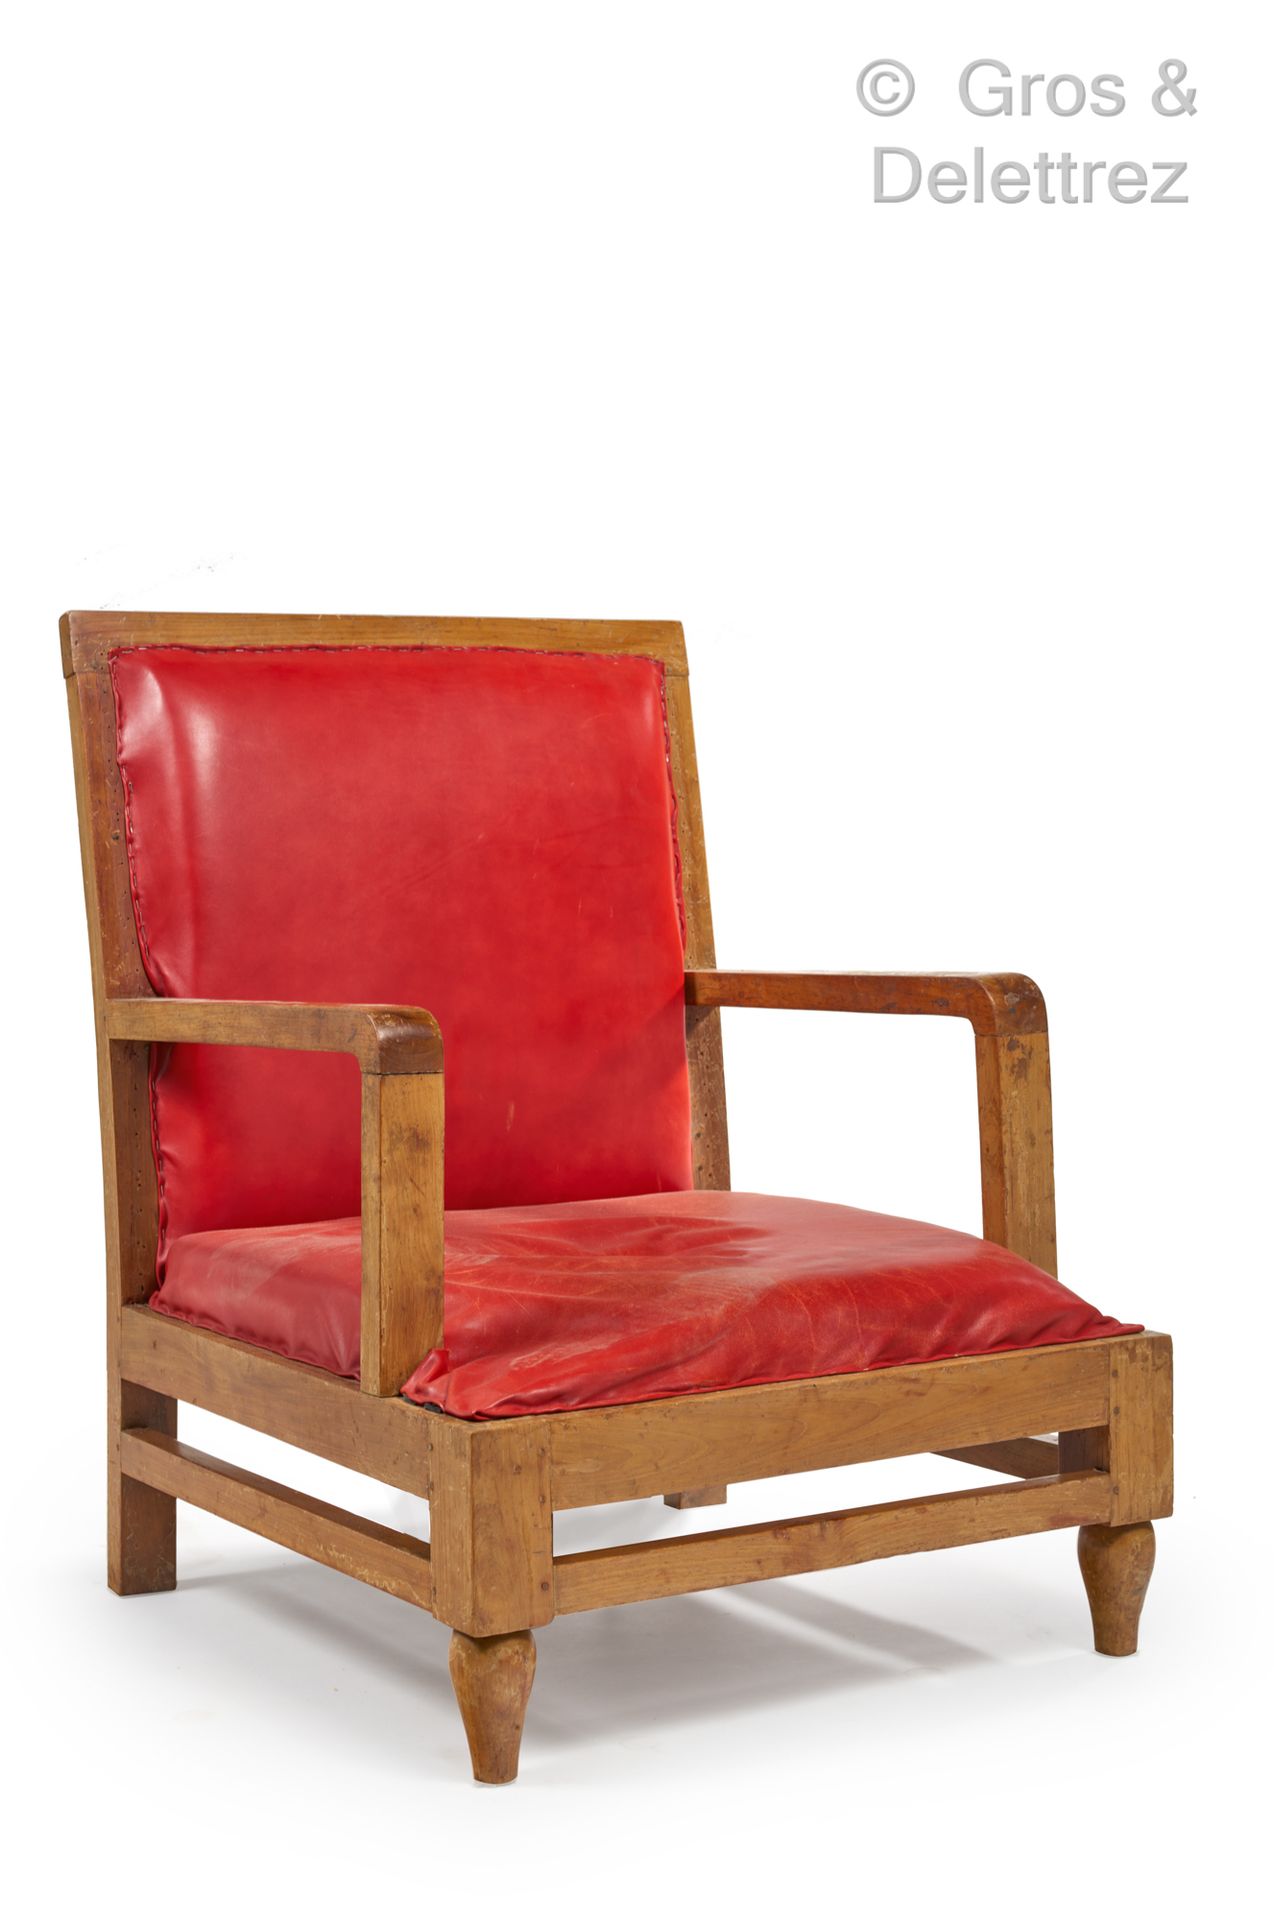 Null ARBEIT aus den 1950er Jahren

Niedriger Sessel aus Nussbaumholz, gerade Rüc&hellip;